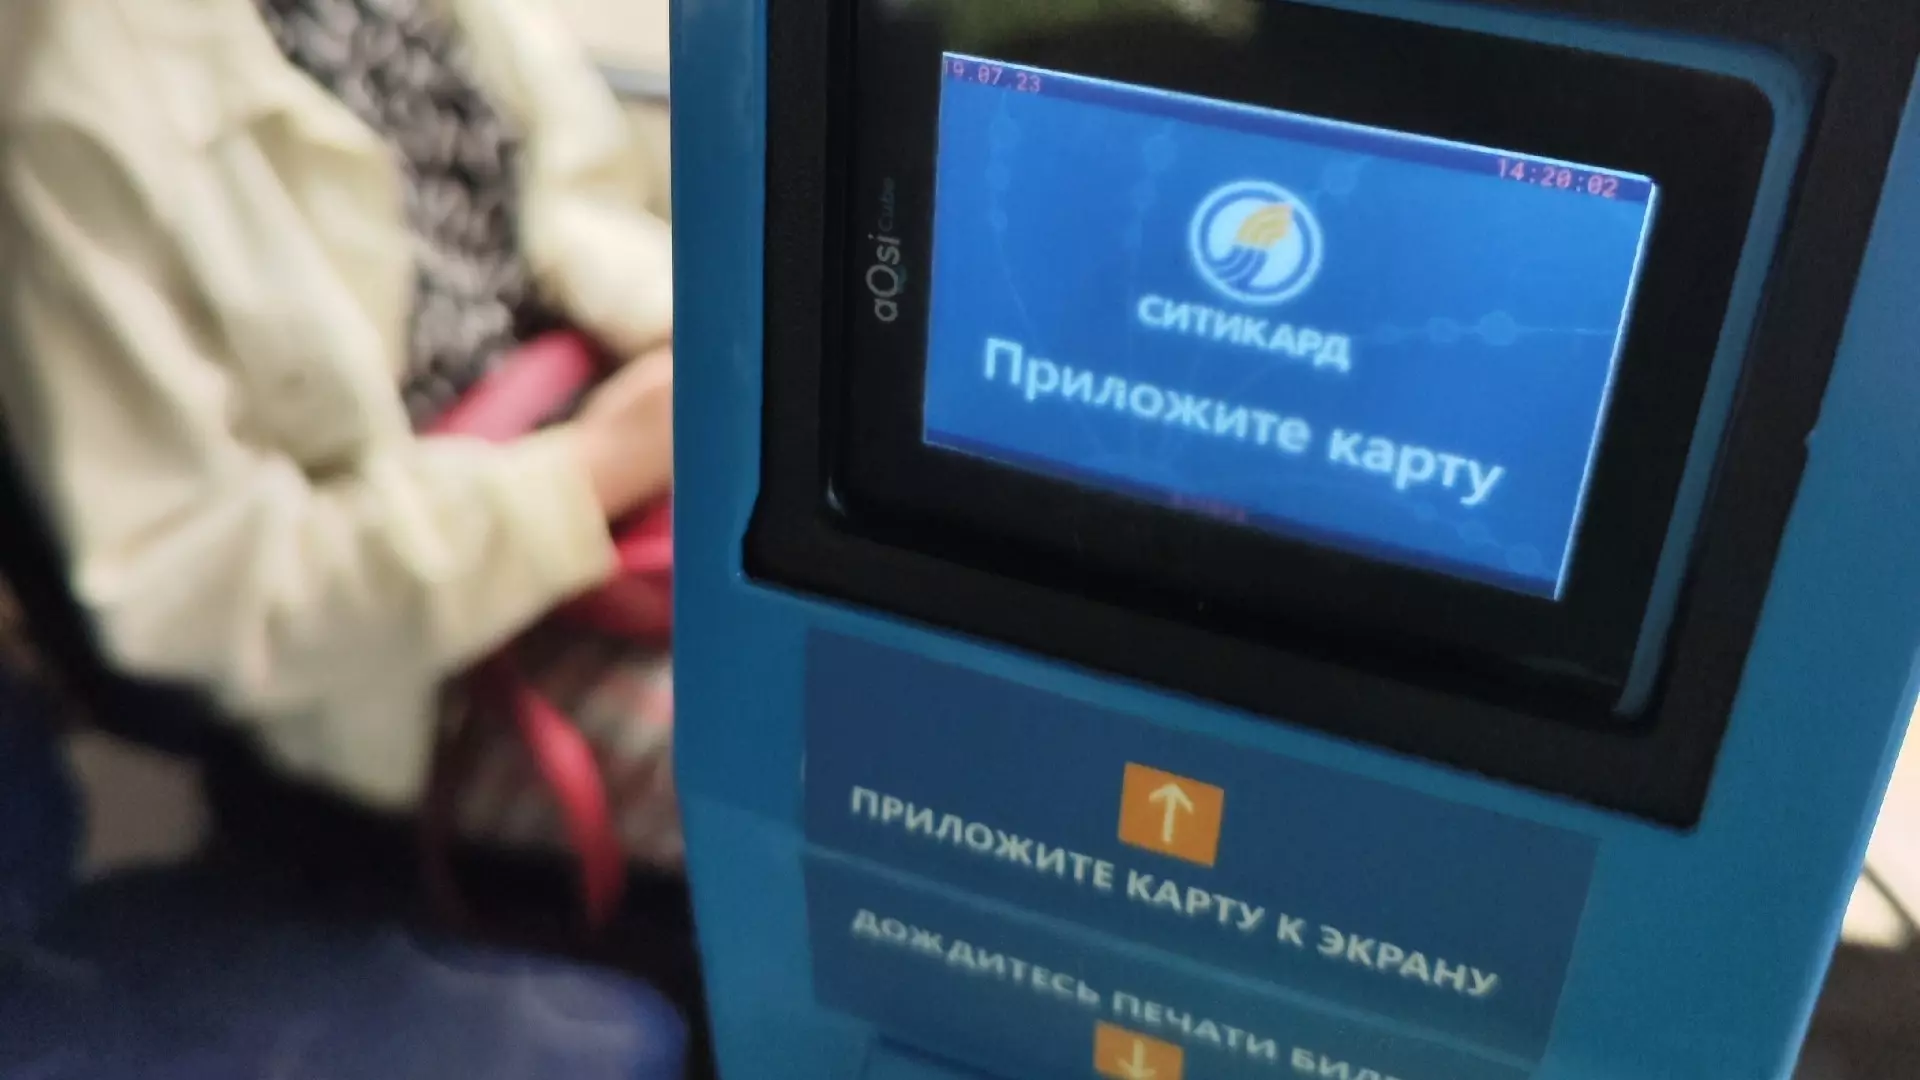 Виртуальные транспортные карты все еще не работают в Нижнем Новгороде